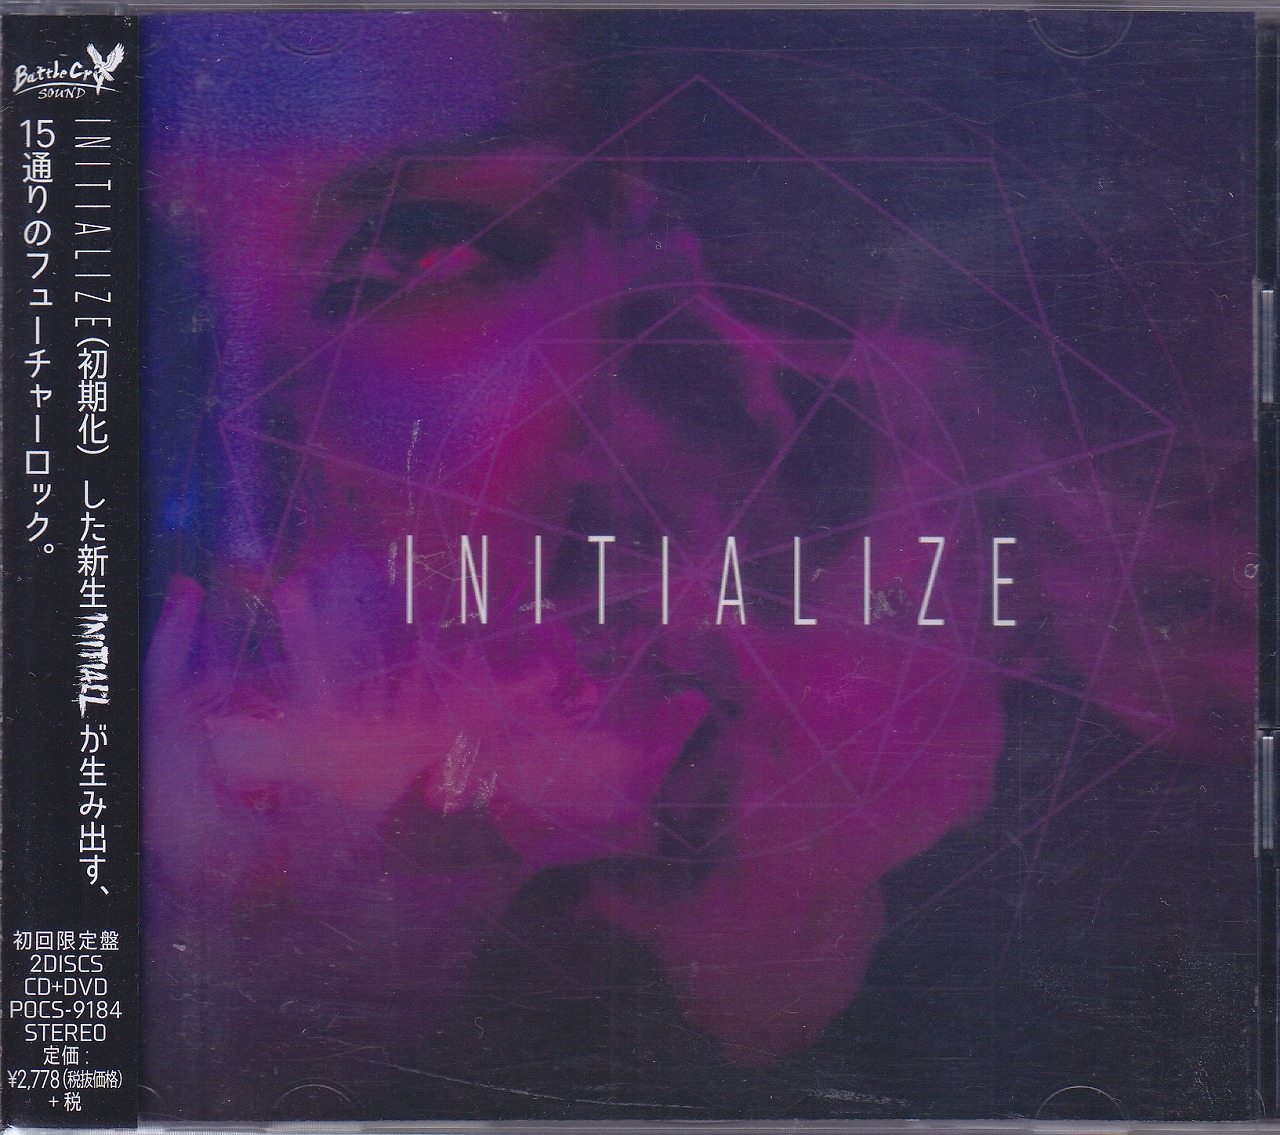 イニシャルエル の CD 【初回限定盤】INITIALIZE